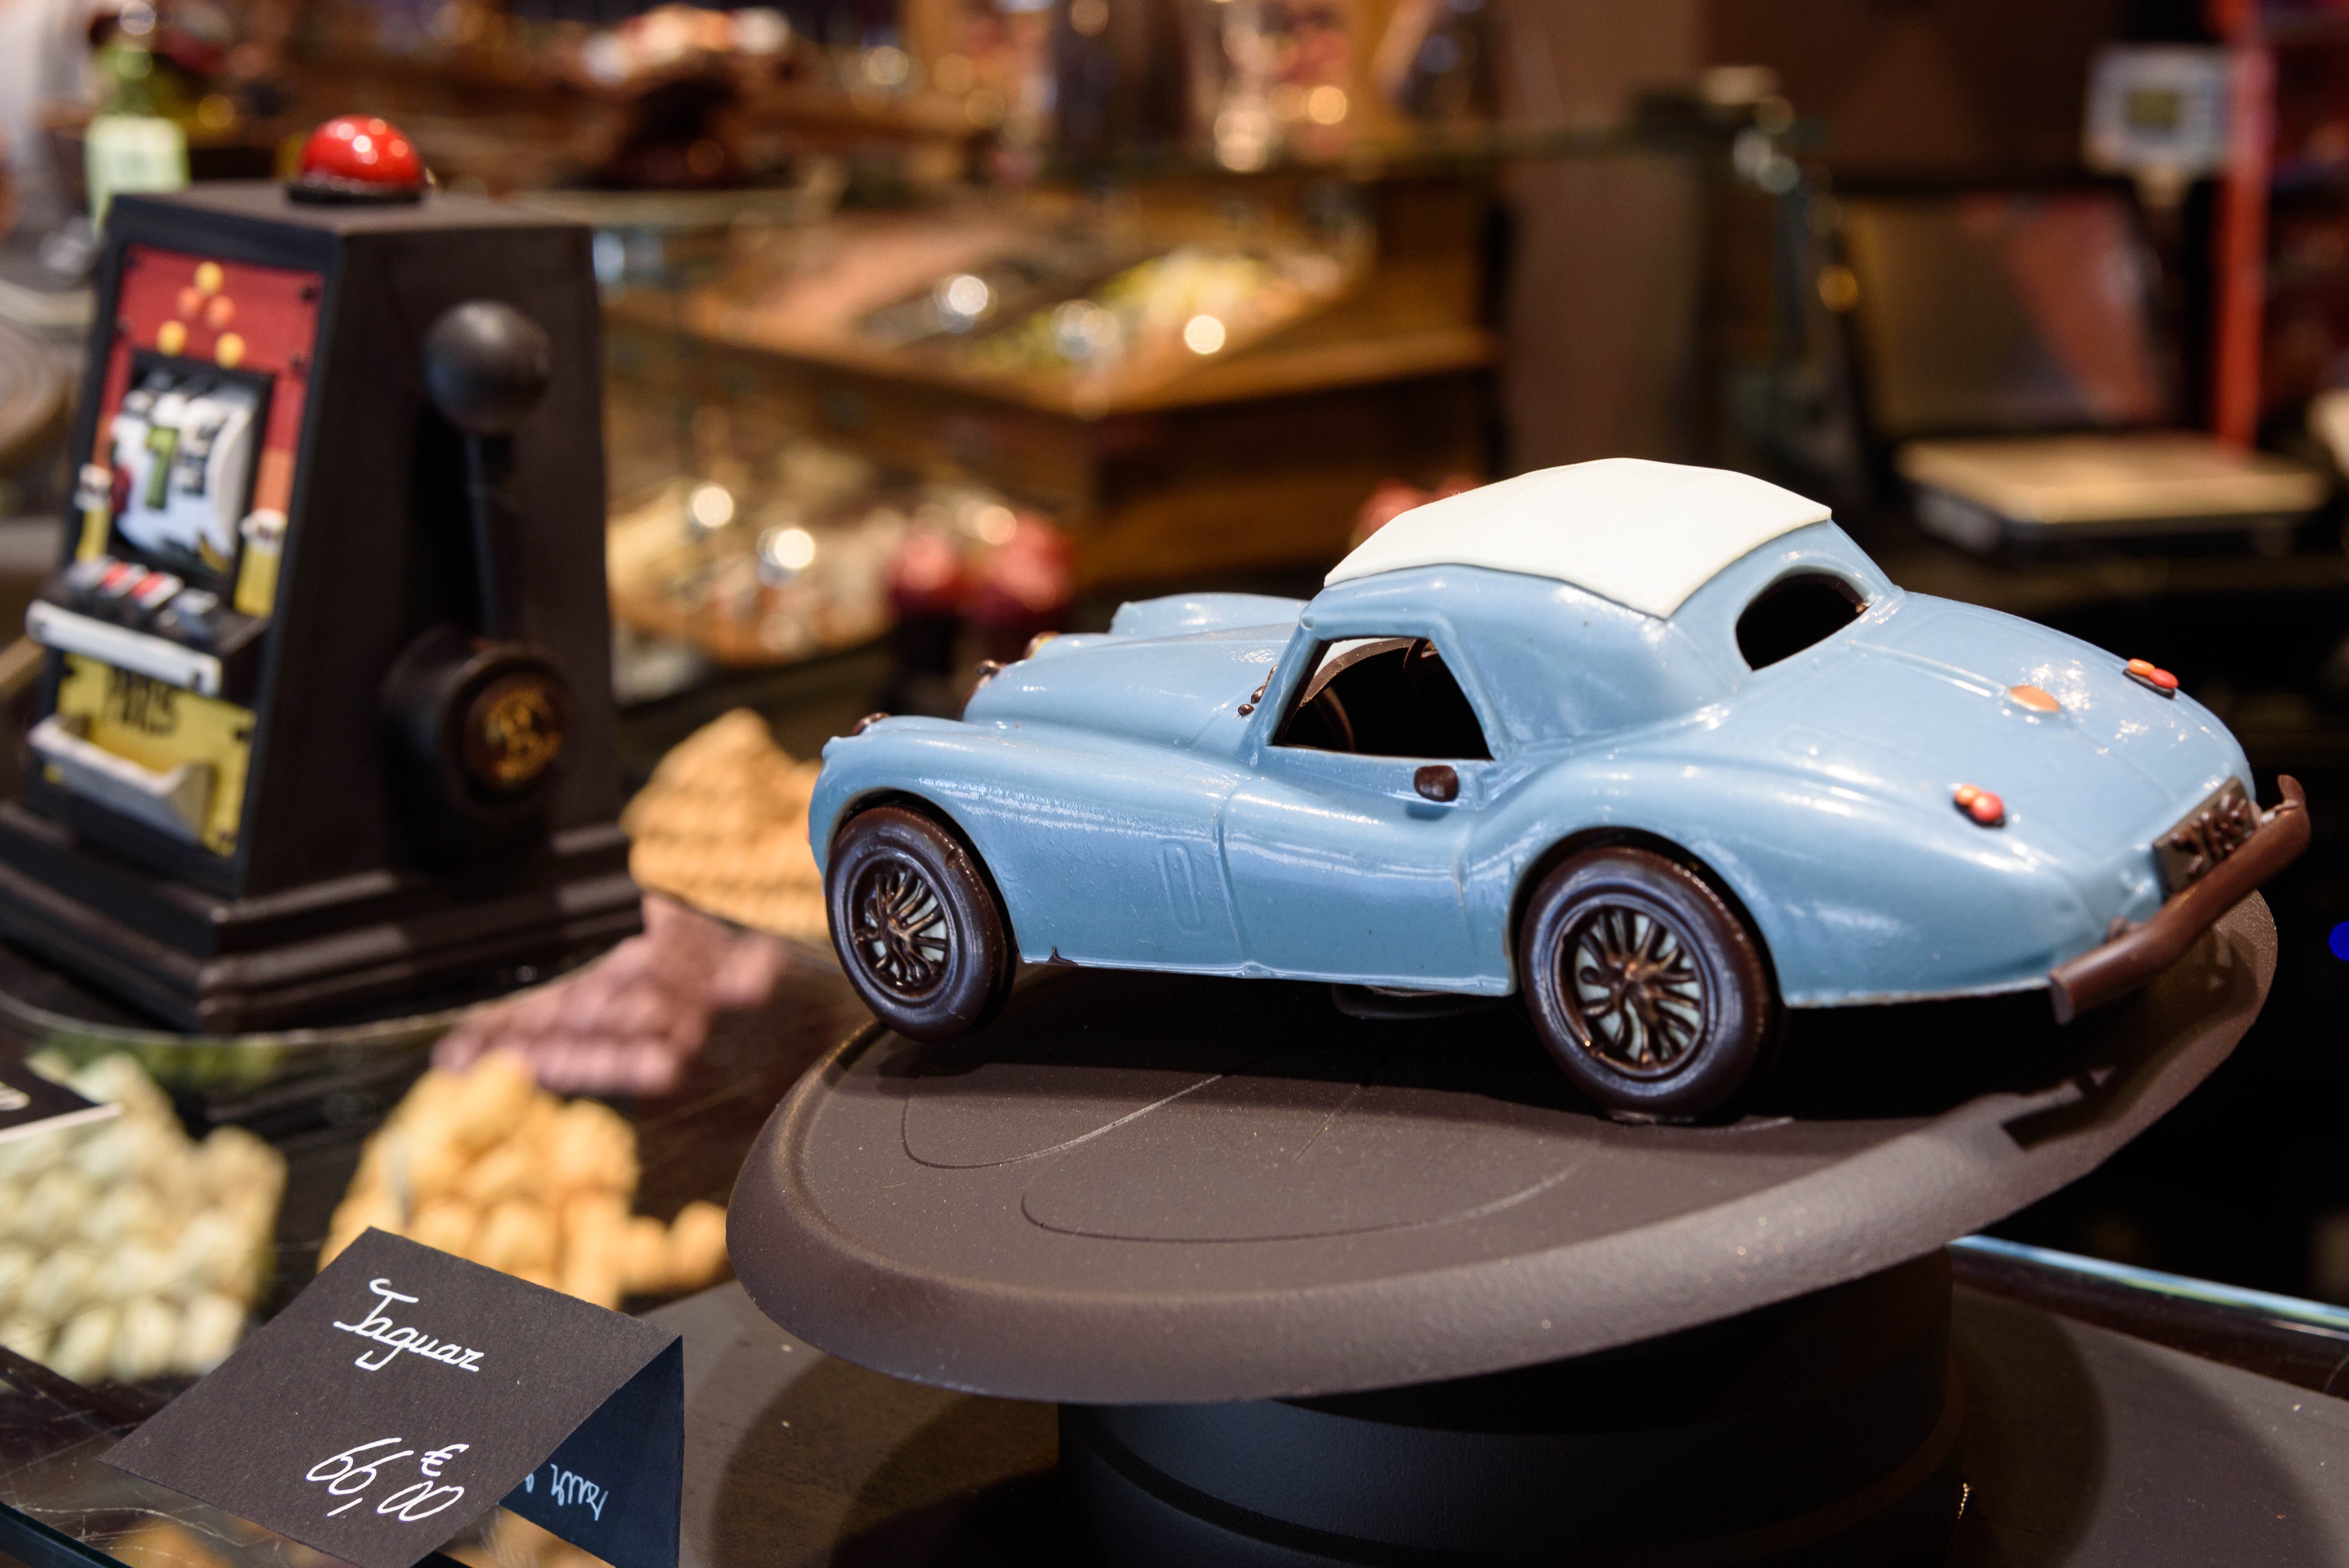 Blue vintage coupe die cast car scale model photo